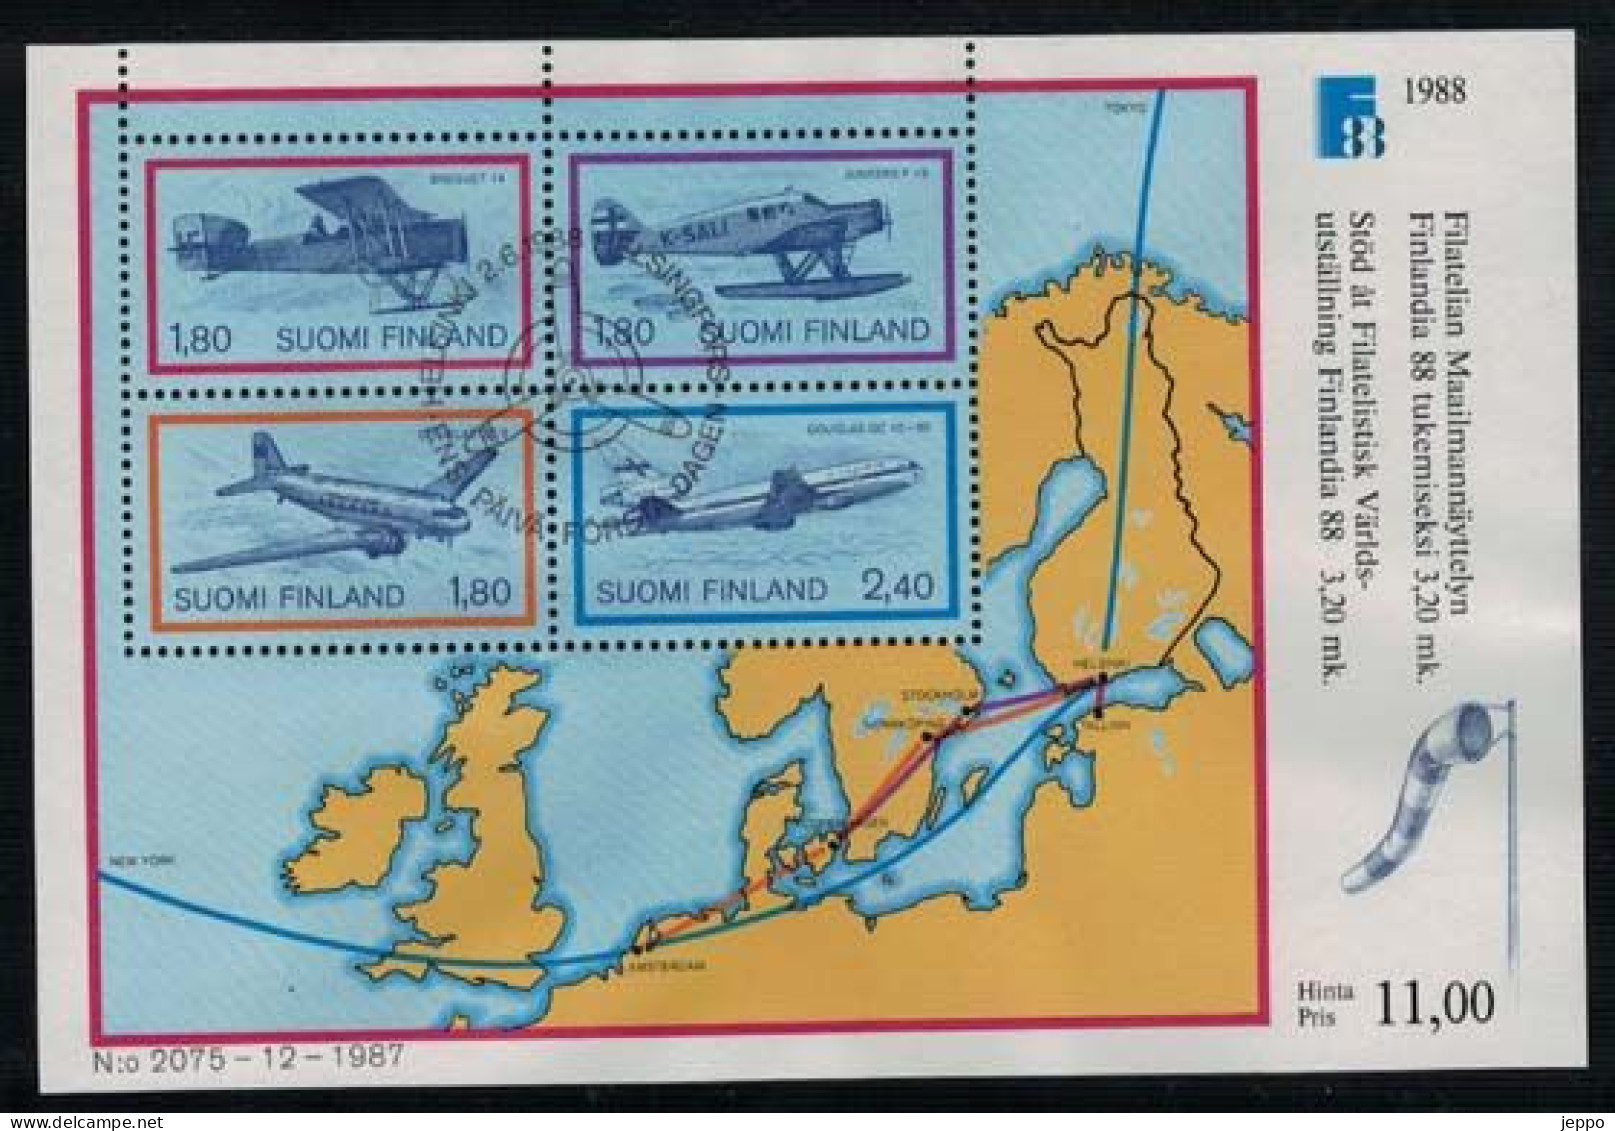 1988 Finland Michel Bl 4, Finlandia 88 Aeroplanes, FD Stamped. - Blocchi E Foglietti